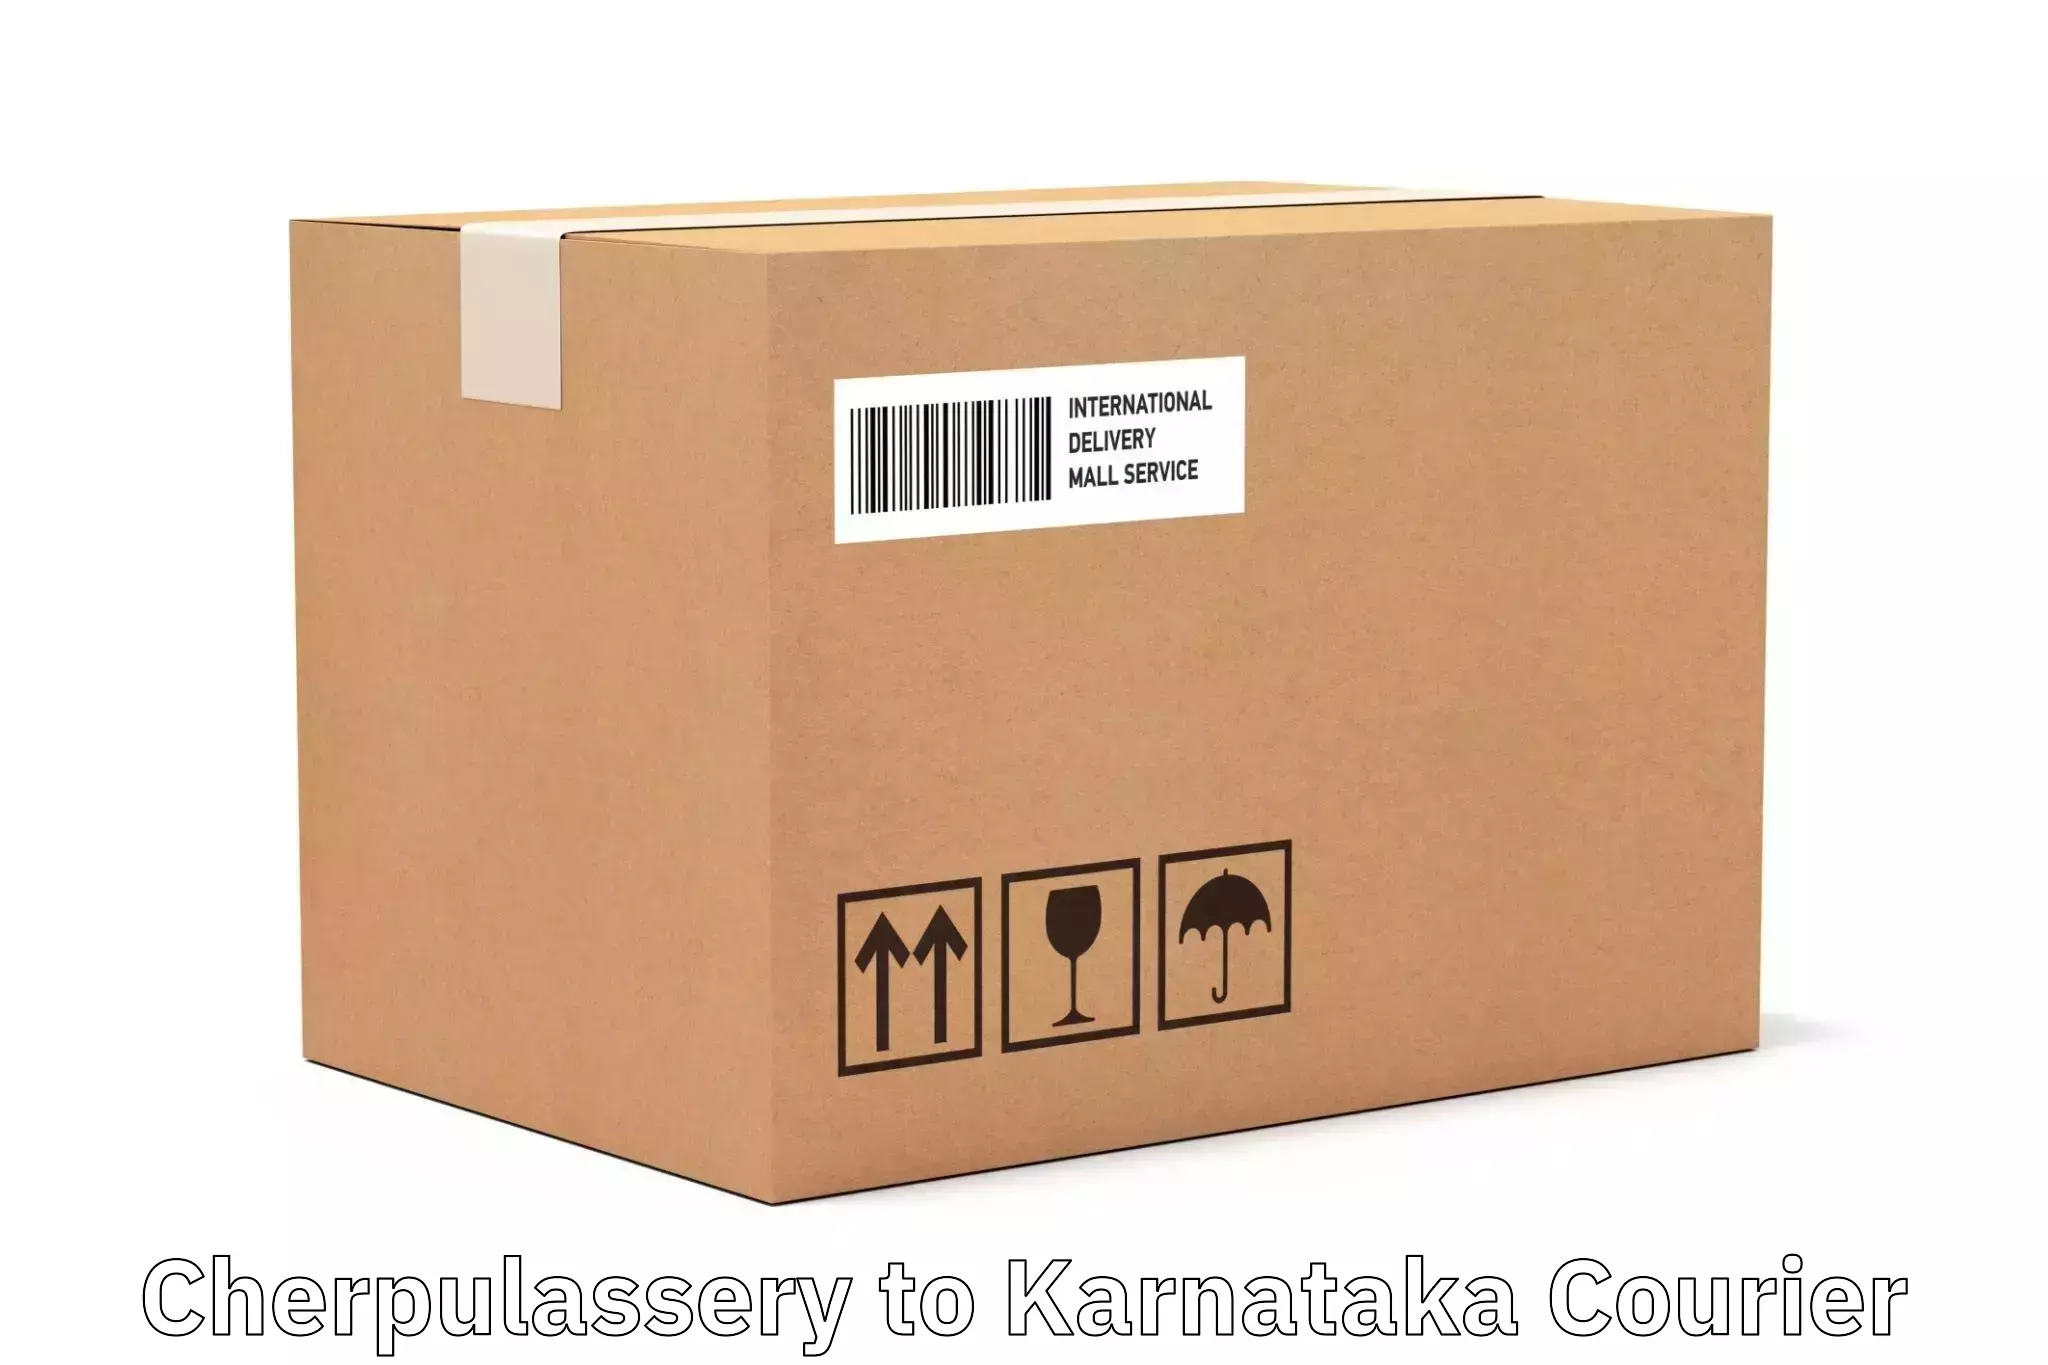 Professional courier handling Cherpulassery to Ramanathapura